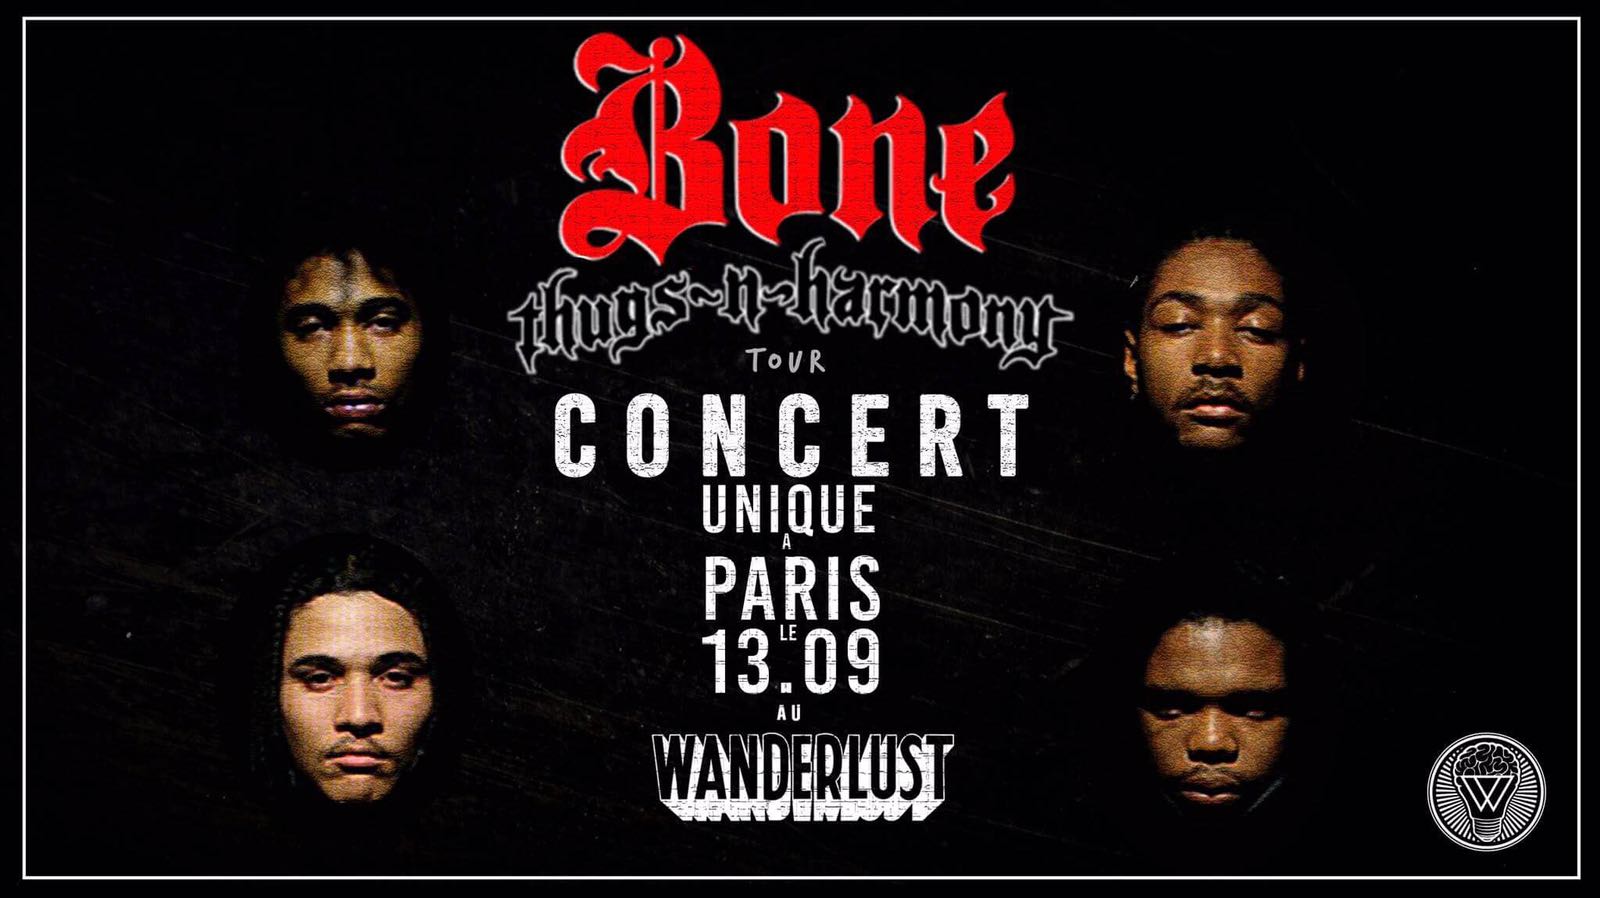 Gagnez vos places pour assister au concert des Bone Thugs-n-Harmony au Wanderlust